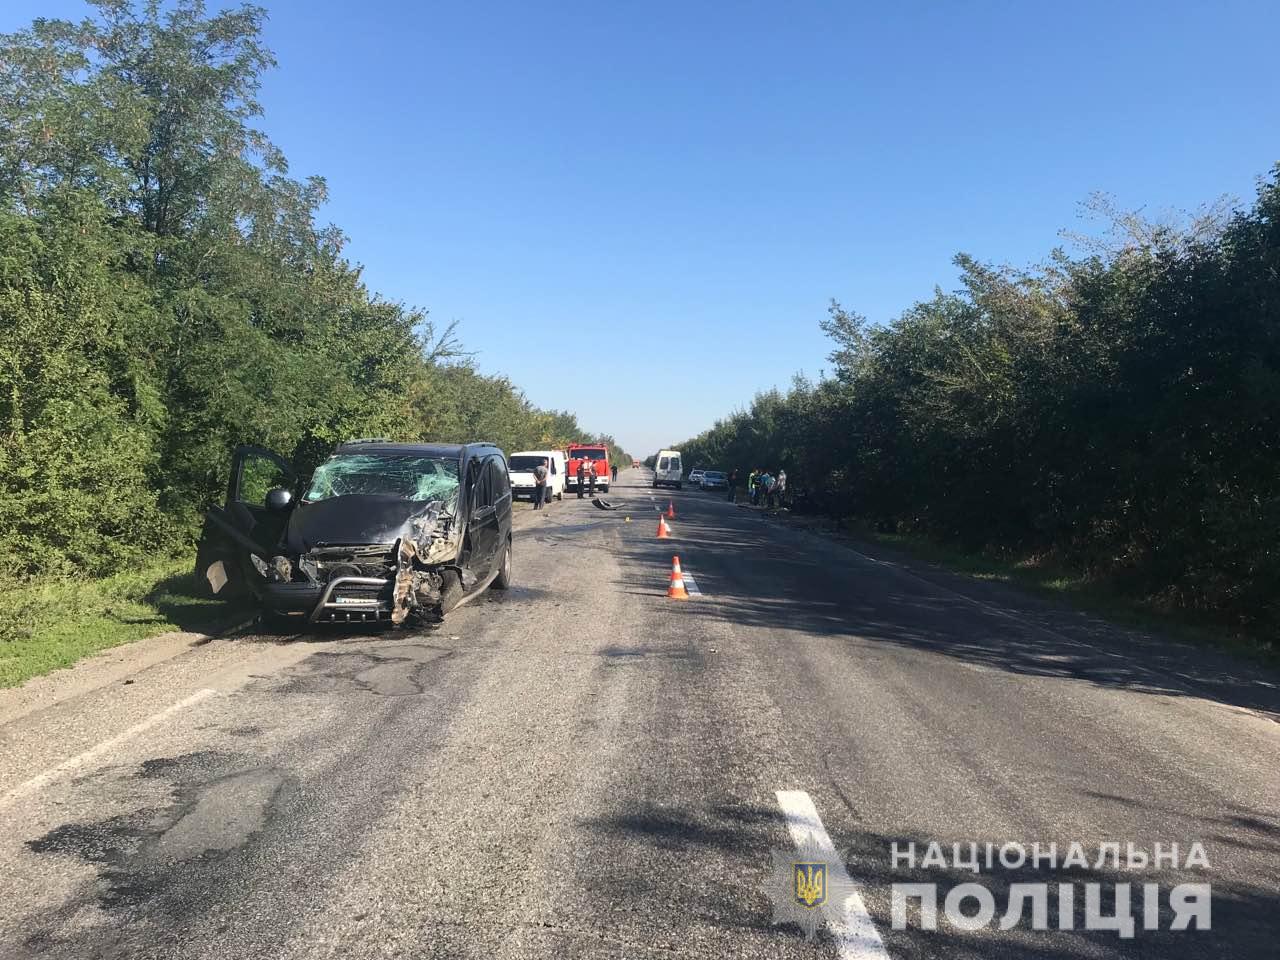 Деталі автокатастрофи, де загинули 4 людини у Запорізькій області (фото, відео)